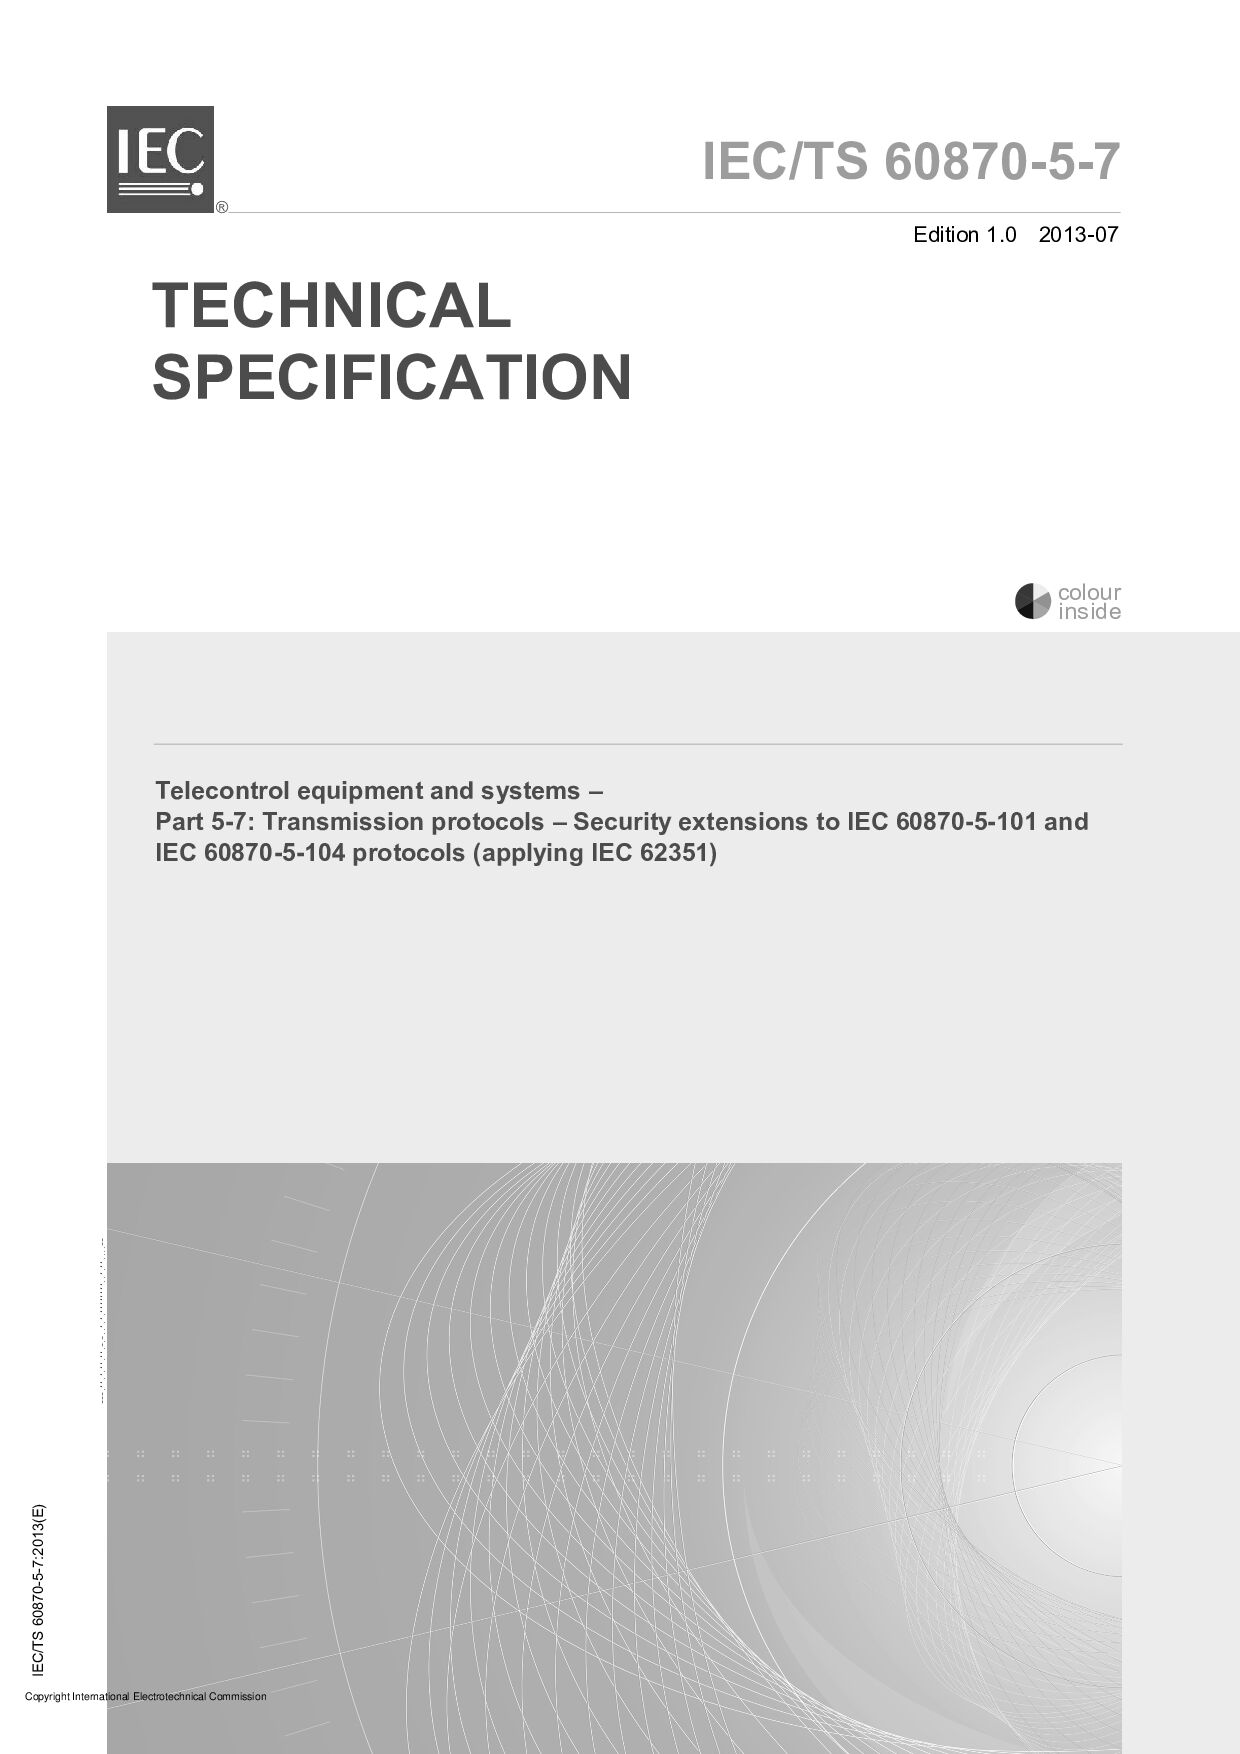 IEC TS 60870-5-7:2013